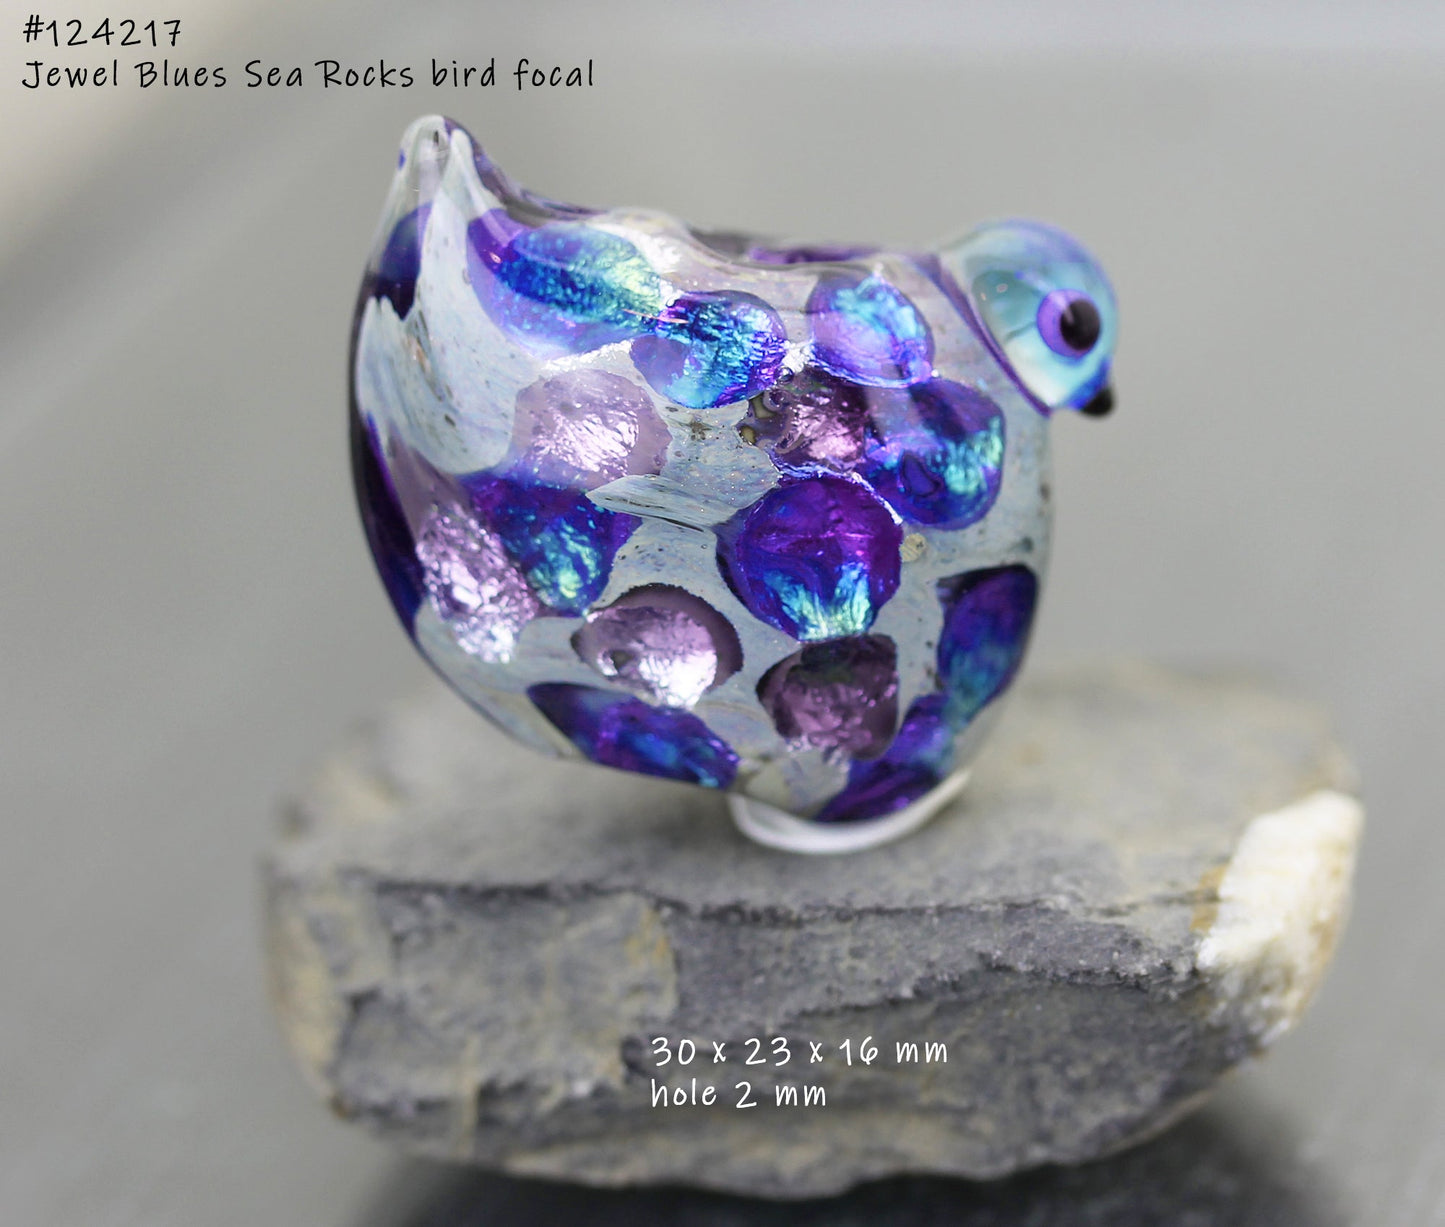 MTO Lentil Sea Rocks Blue Jewels #124217l